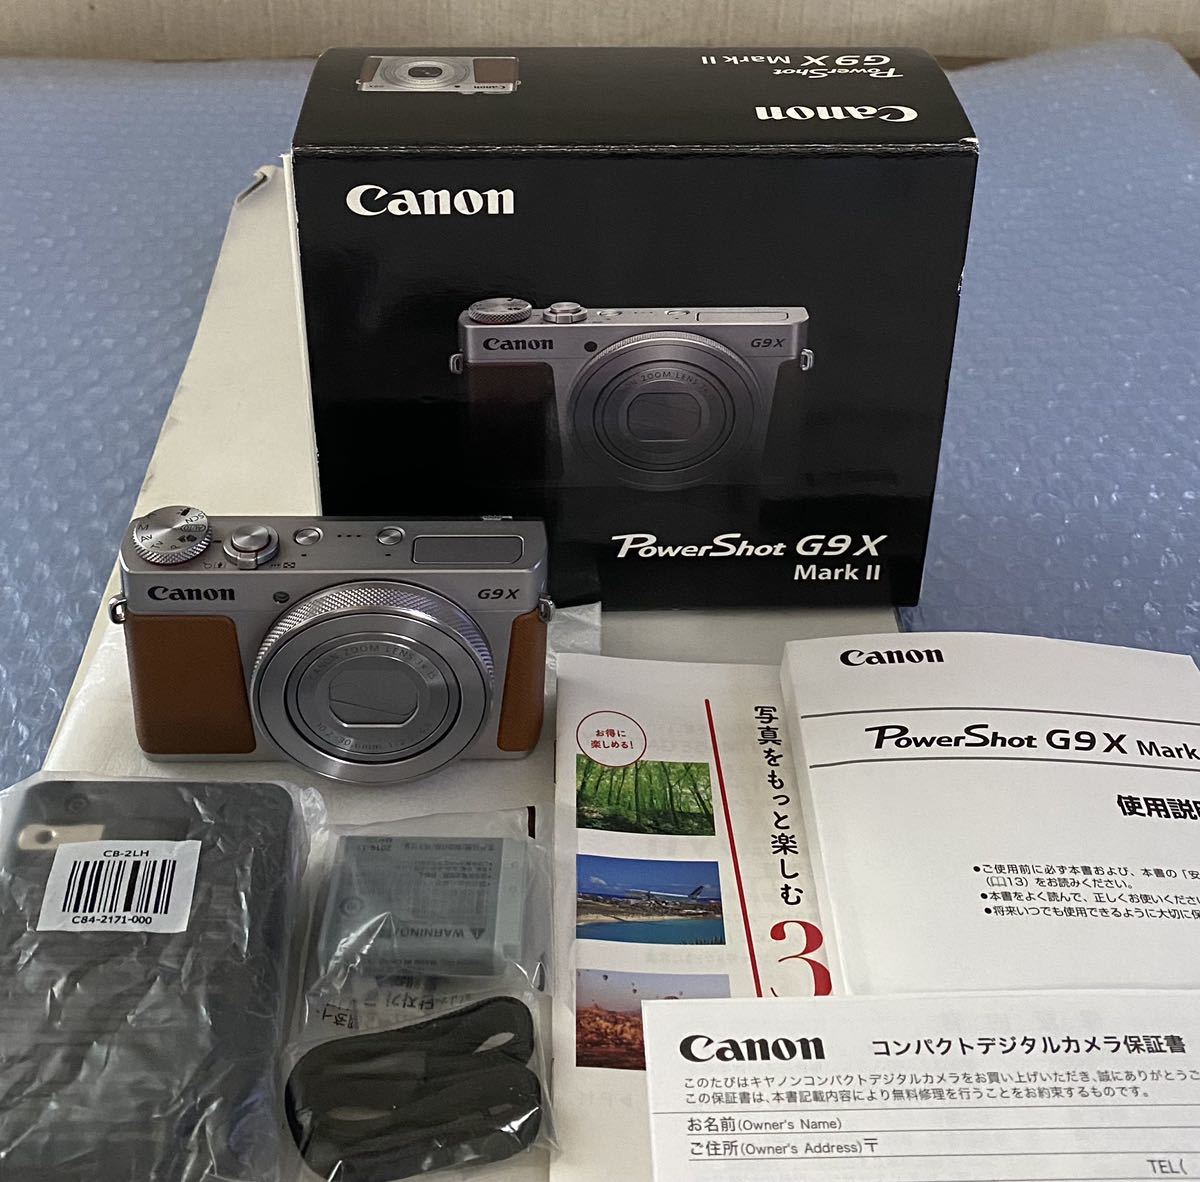 Canon デジタルカメラ PowerShot G9 X(シルバー) 光学3.0倍ズーム 1.0型センサー PSG9X(SL)